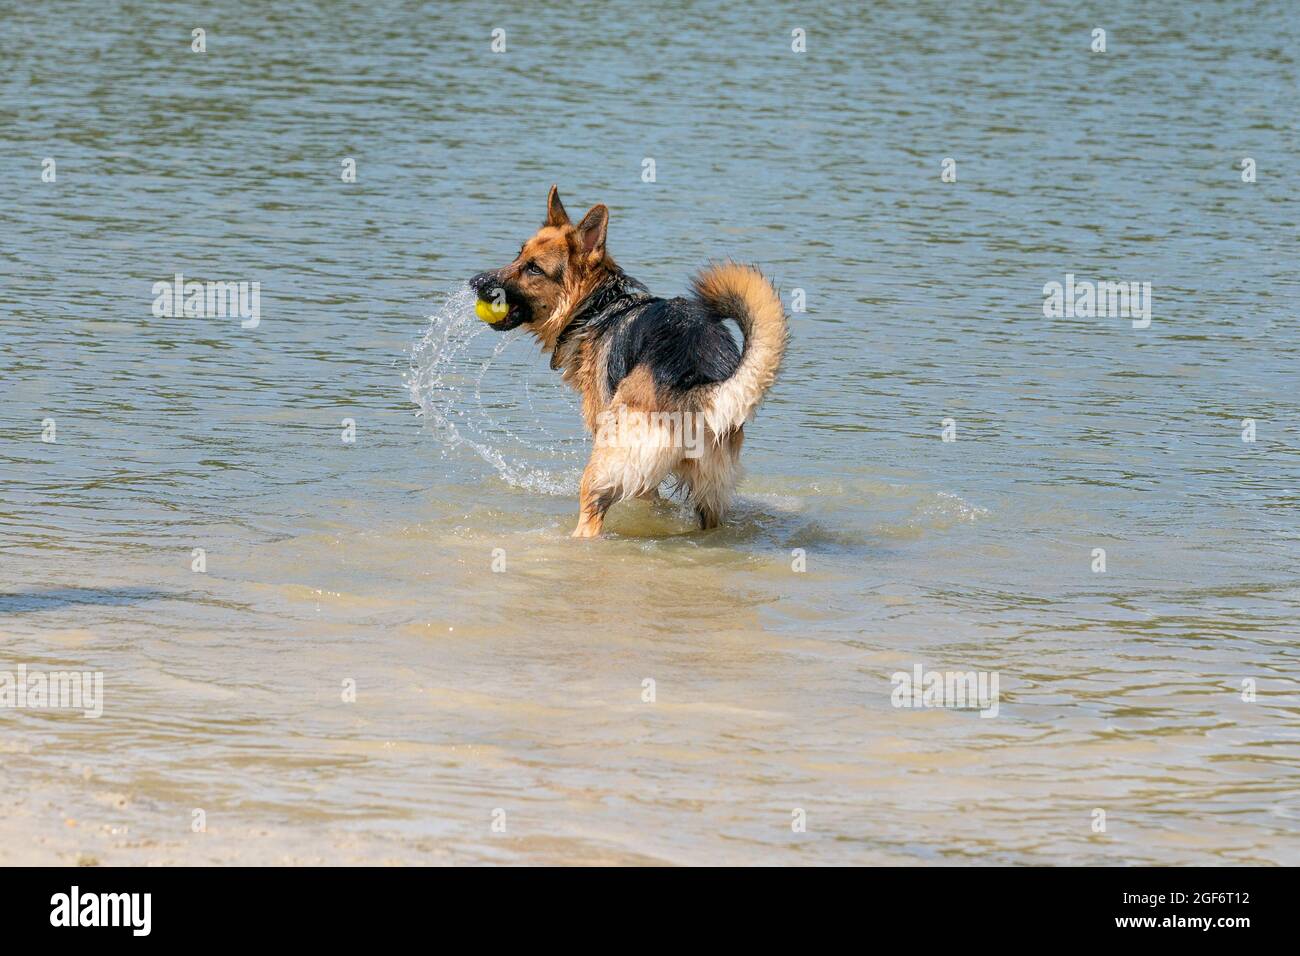 Giovane pastore tedesco felice, salta in acqua con grande spruzzi. Il cane spruzza e salta felicemente nel lago Foto Stock